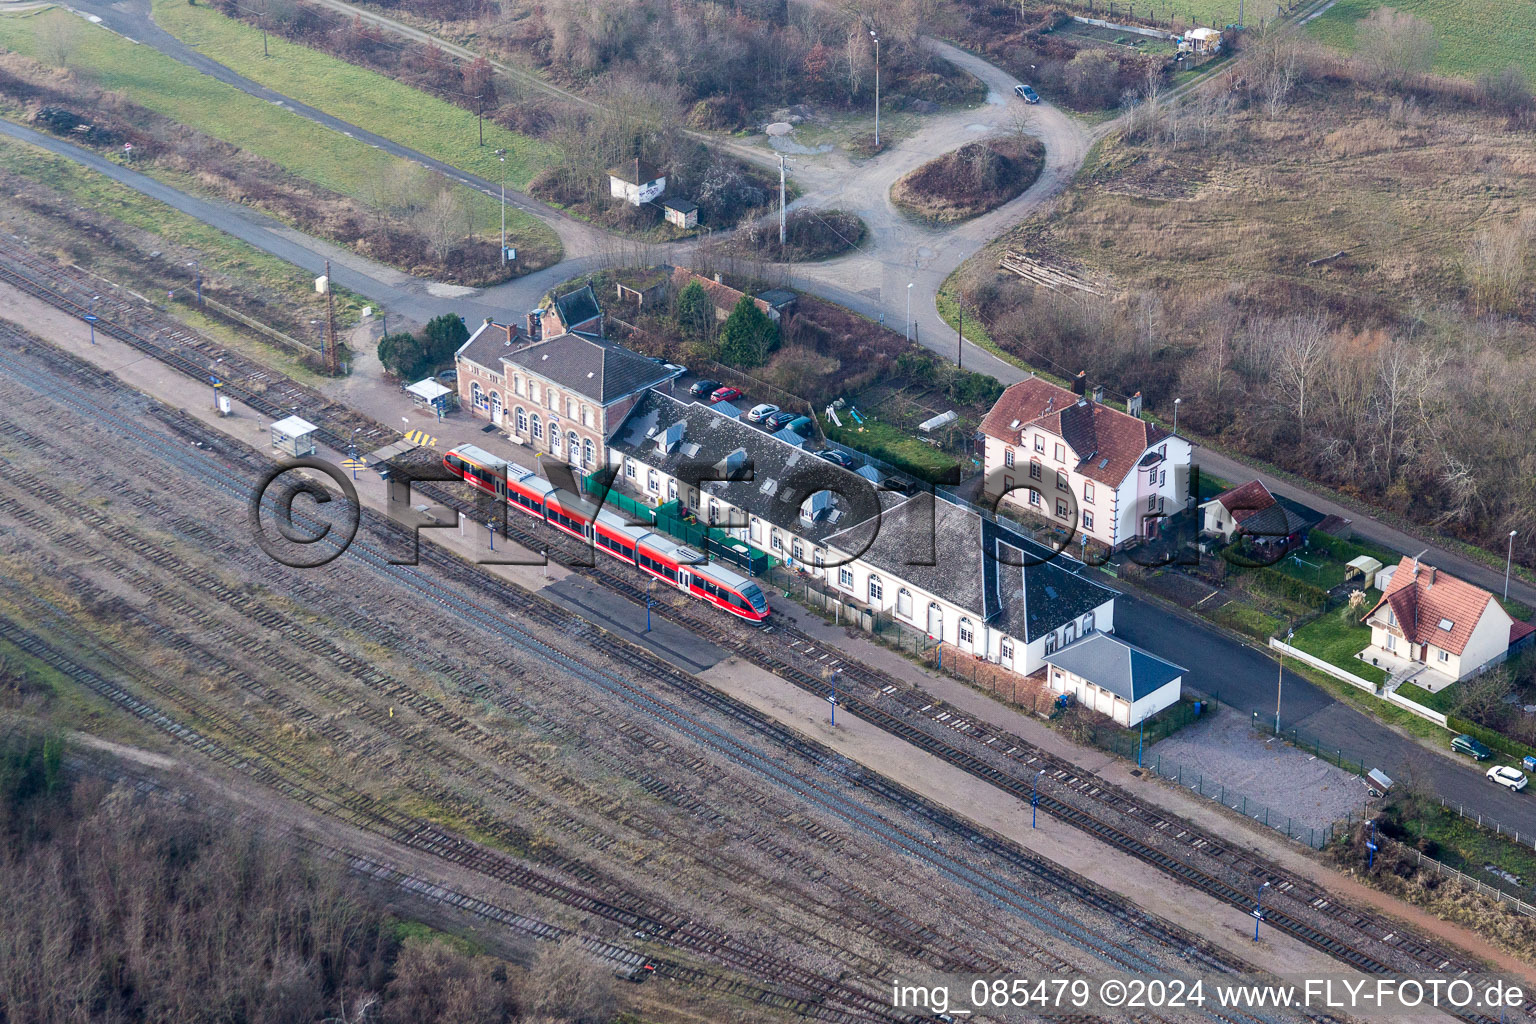 Gleisverlauf und Bahnhofsgebäude der Französischen Bahn in Lauterbourg in Grand Est im Bundesland Bas-Rhin, Frankreich